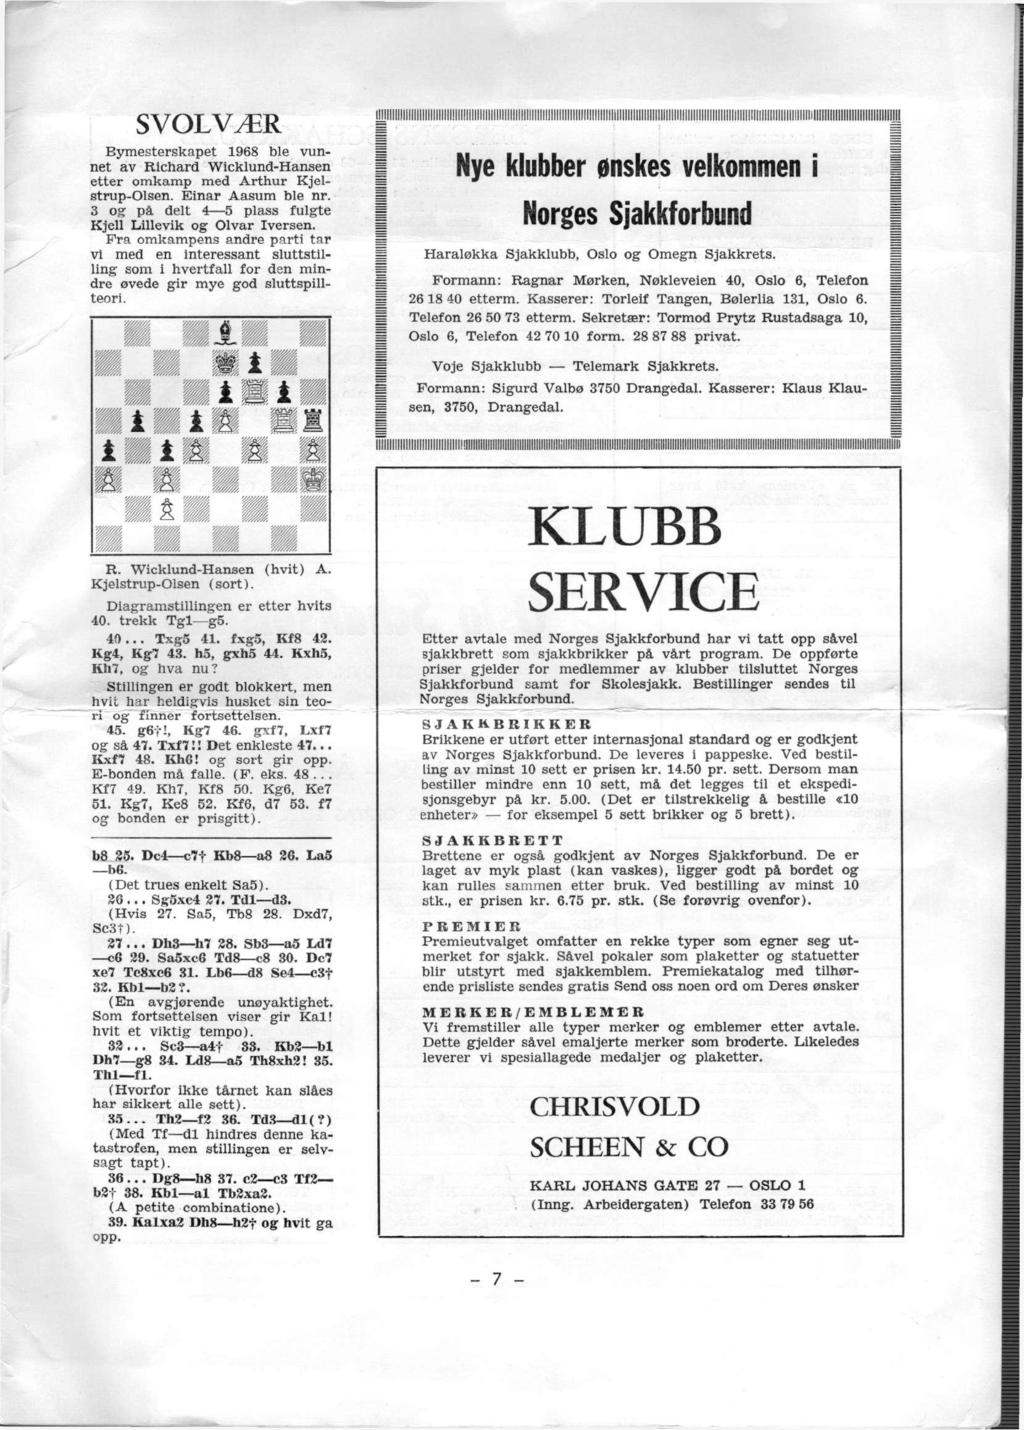 SVOLVÆR Bymesterskapet 1968 ble vunnet av Richard Wicklund-Hansen etter omkamp med Arthur Kjelstrup-Olsen. Einar Aasum ble nr. 3 og på delt 4 5 plass fulgte Kjell Lillevik og Olvar Iversen.